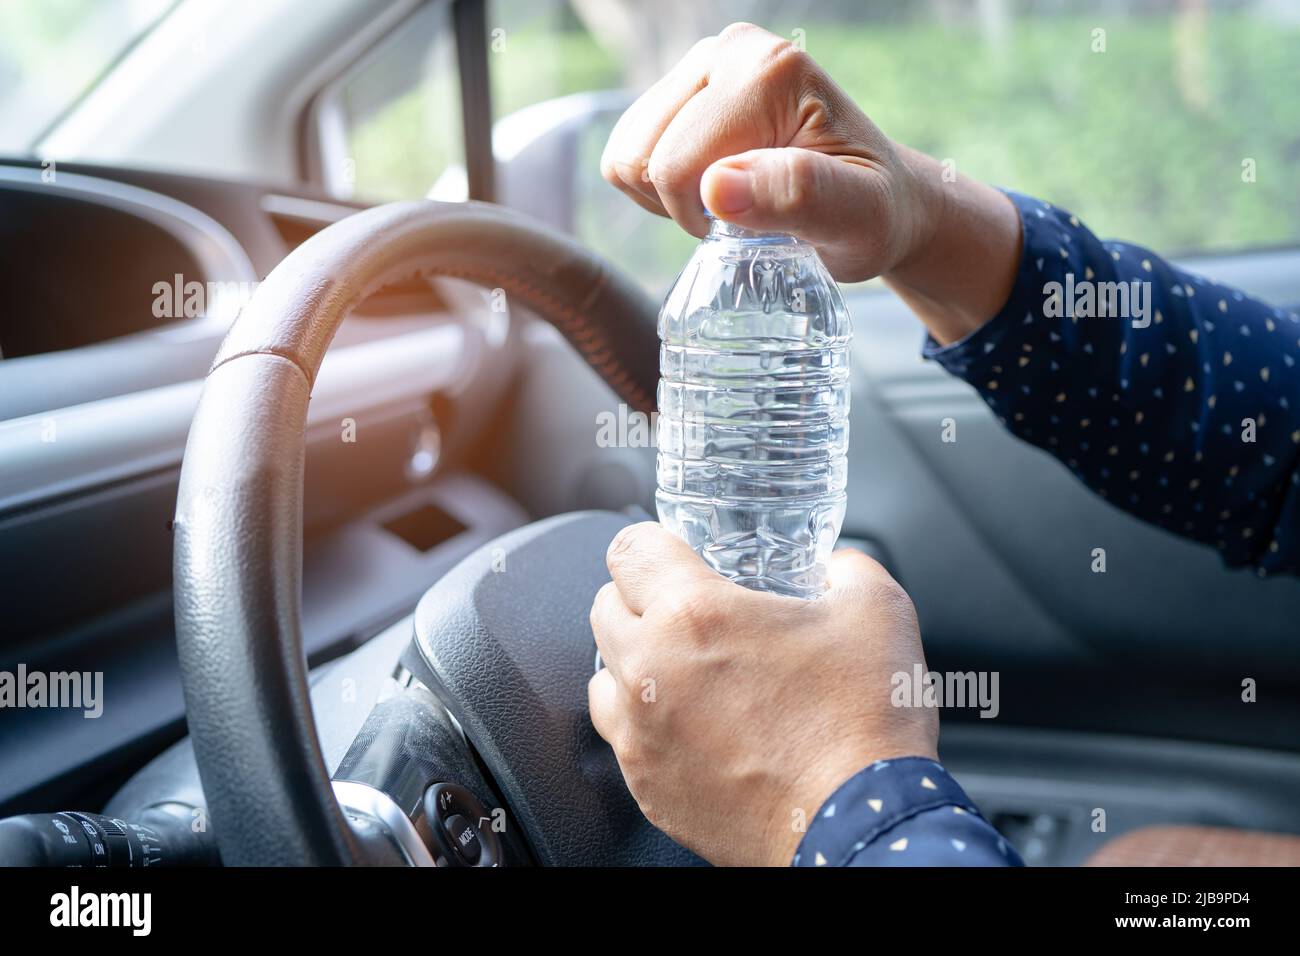 Asiatische Frau Fahrer hält Flasche für Wasser trinken, während Sie ein Auto  fahren. Die Heißwasserflasche aus Kunststoff verursacht einen Brand  Stockfotografie - Alamy